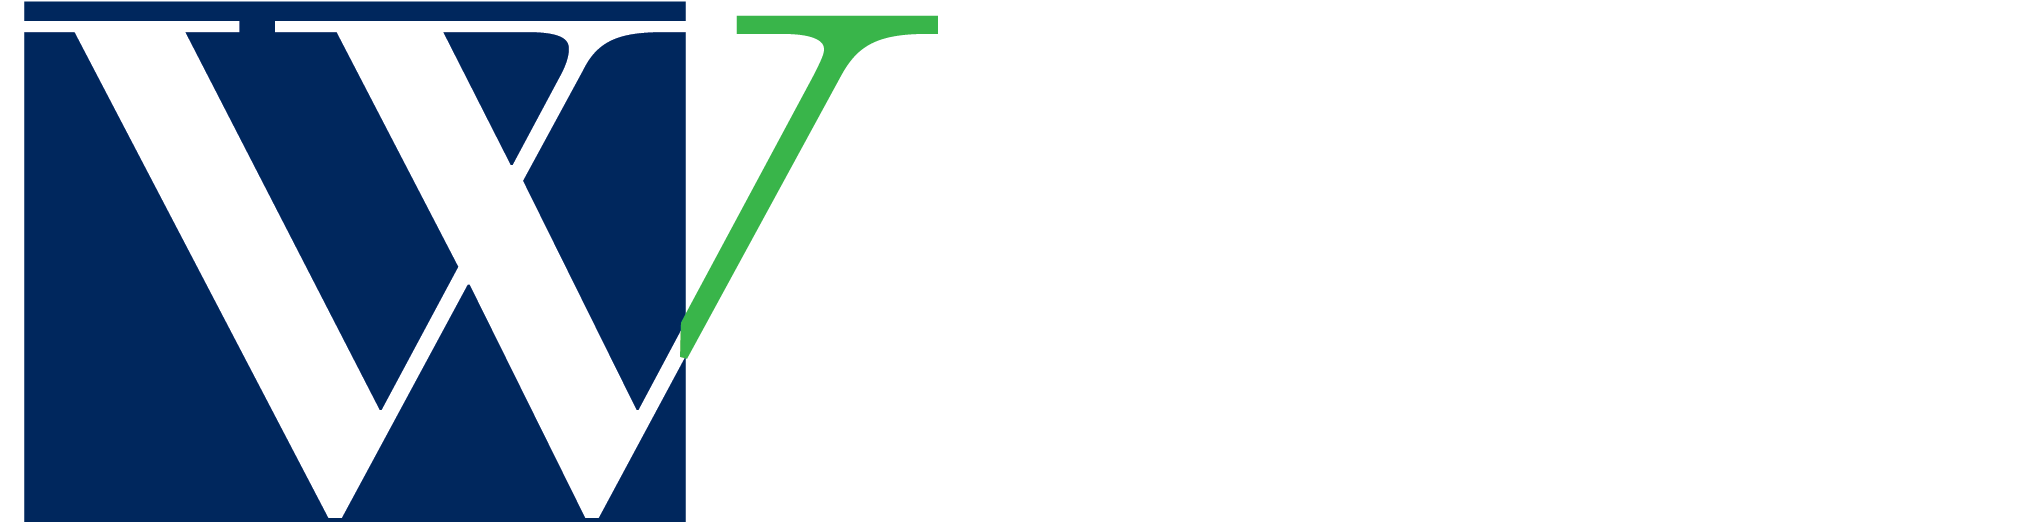 Branding - Westminster School (2040x551)